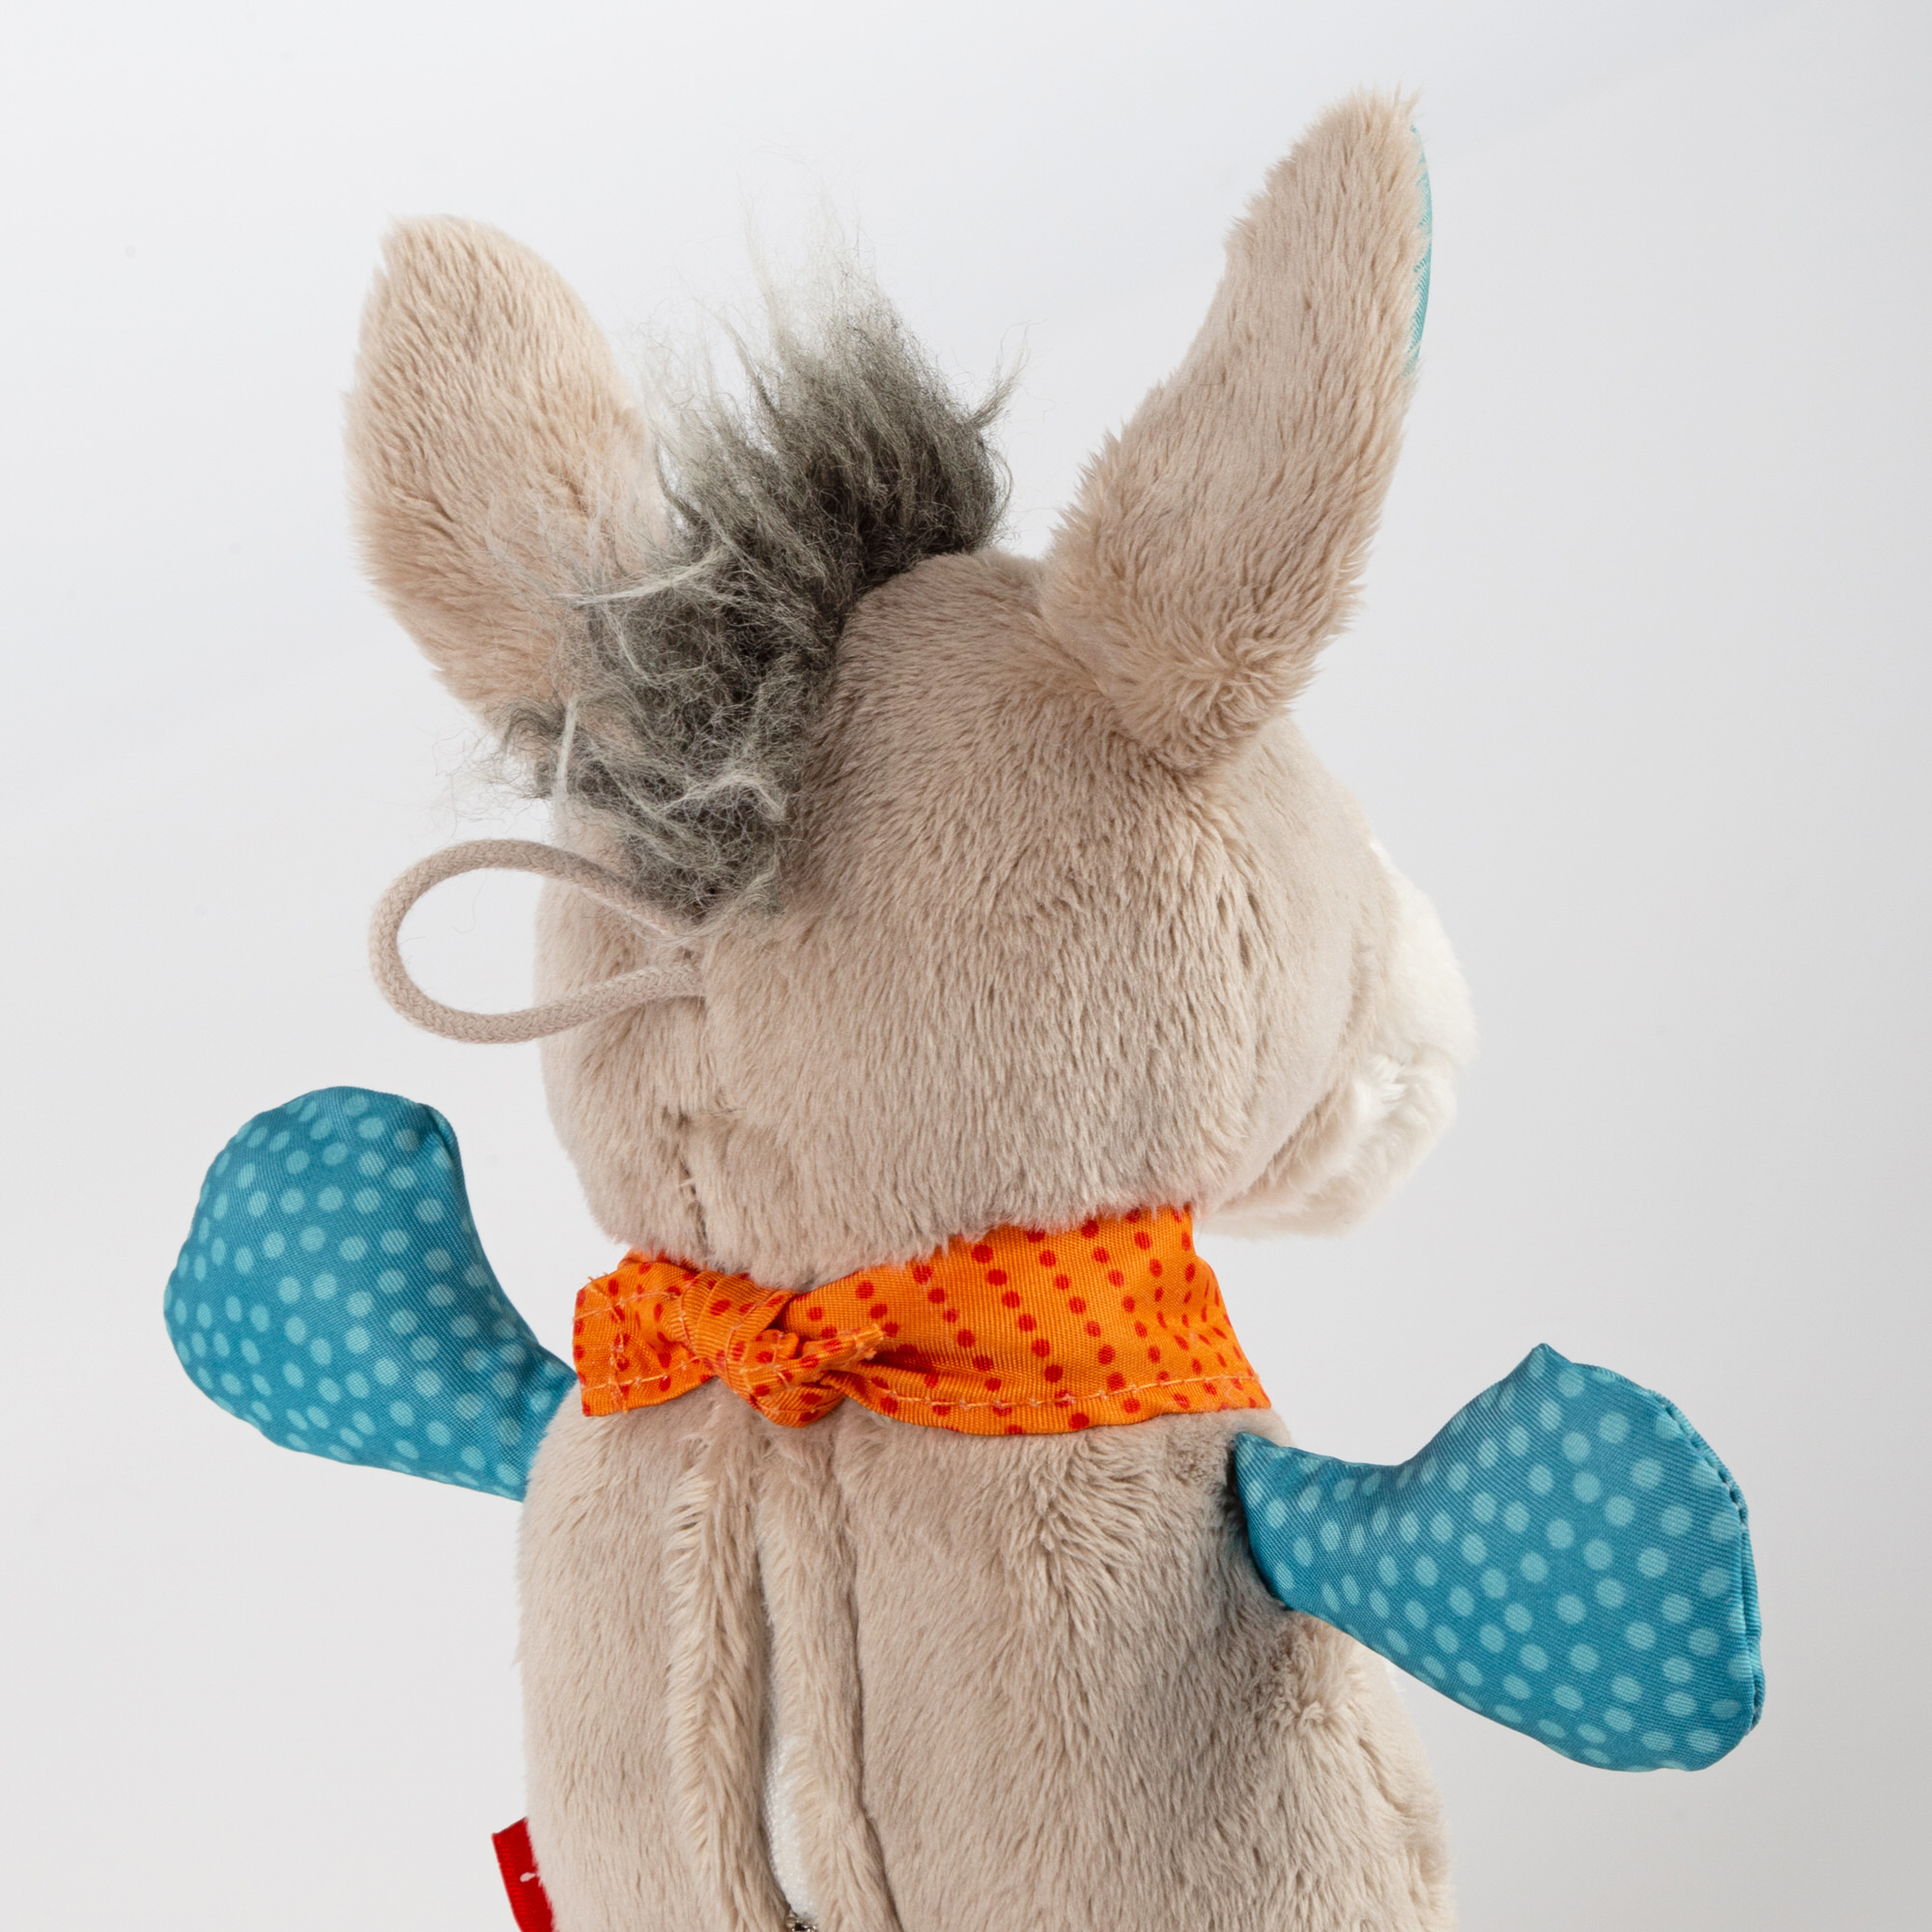 Musical plush toy donkey